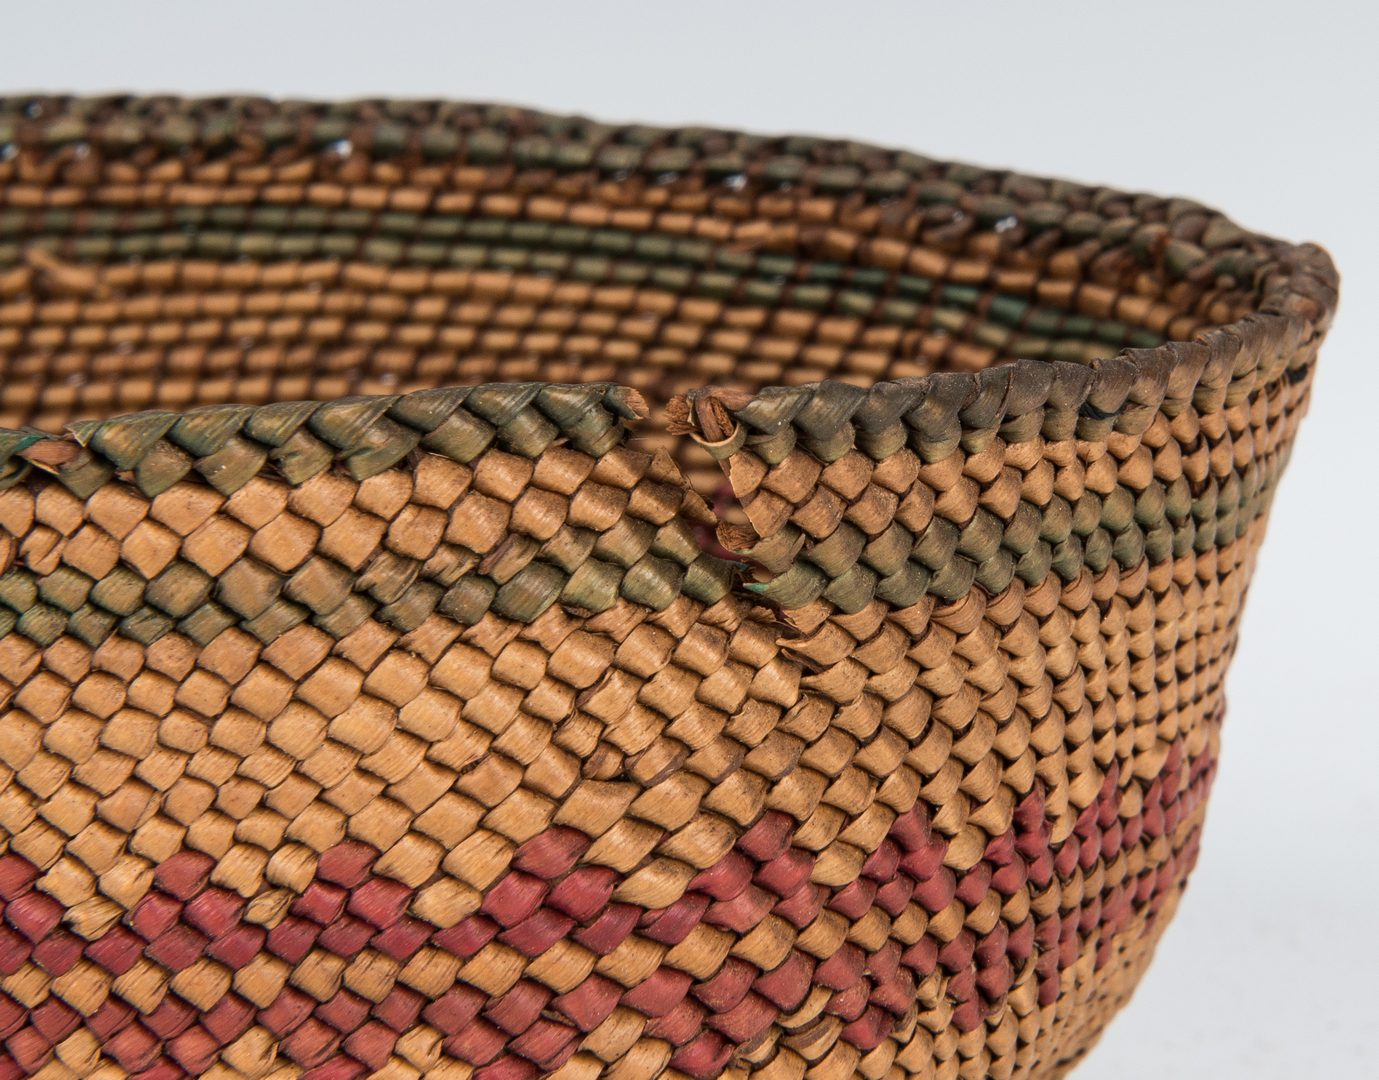 Lot 688: 4 Native American Baskets, inc. Tlingit